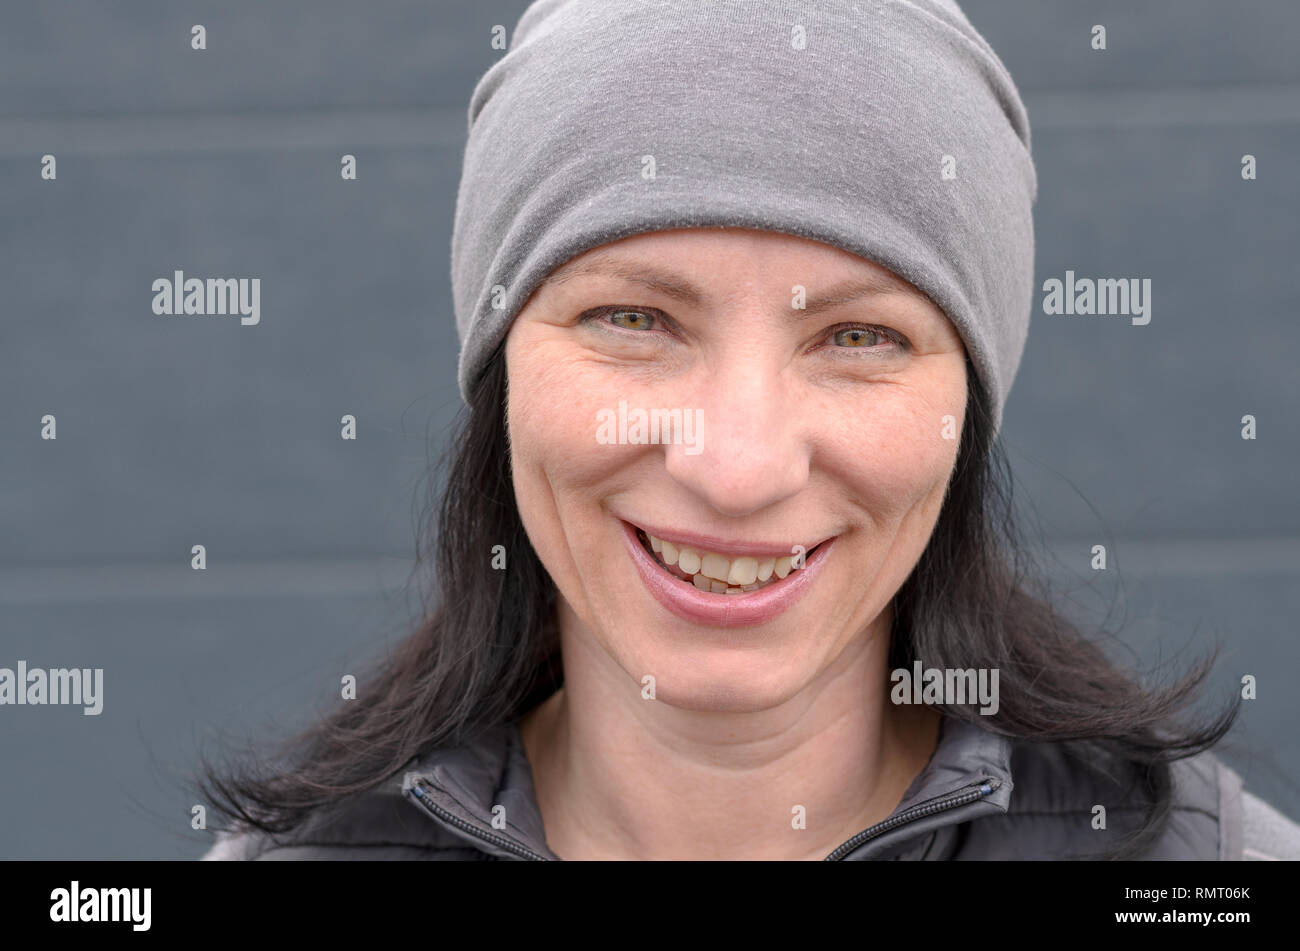 Ritratto di sorridere donna di mezza età che indossa grigio beanie hat. Foto Stock